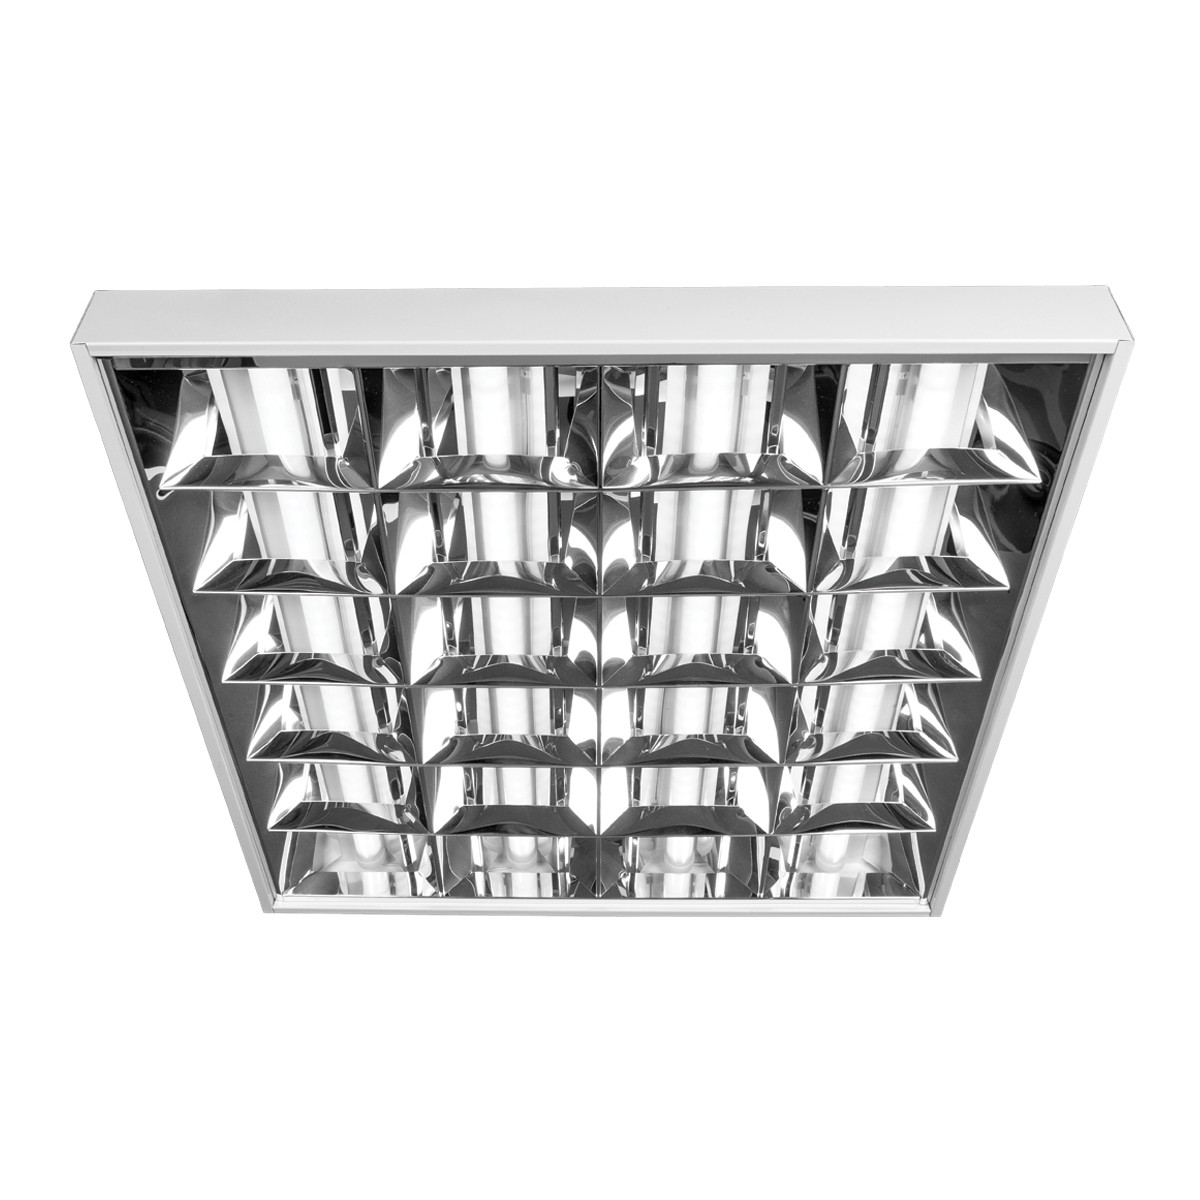 Φωτιστικό led πάνελ τετράγωνο με 3 διπλούς καθρέπτες, λευκό πλαίσιο, 44W, 3000K, 4.000lm, 900mA VK/04286/900/3/W/W